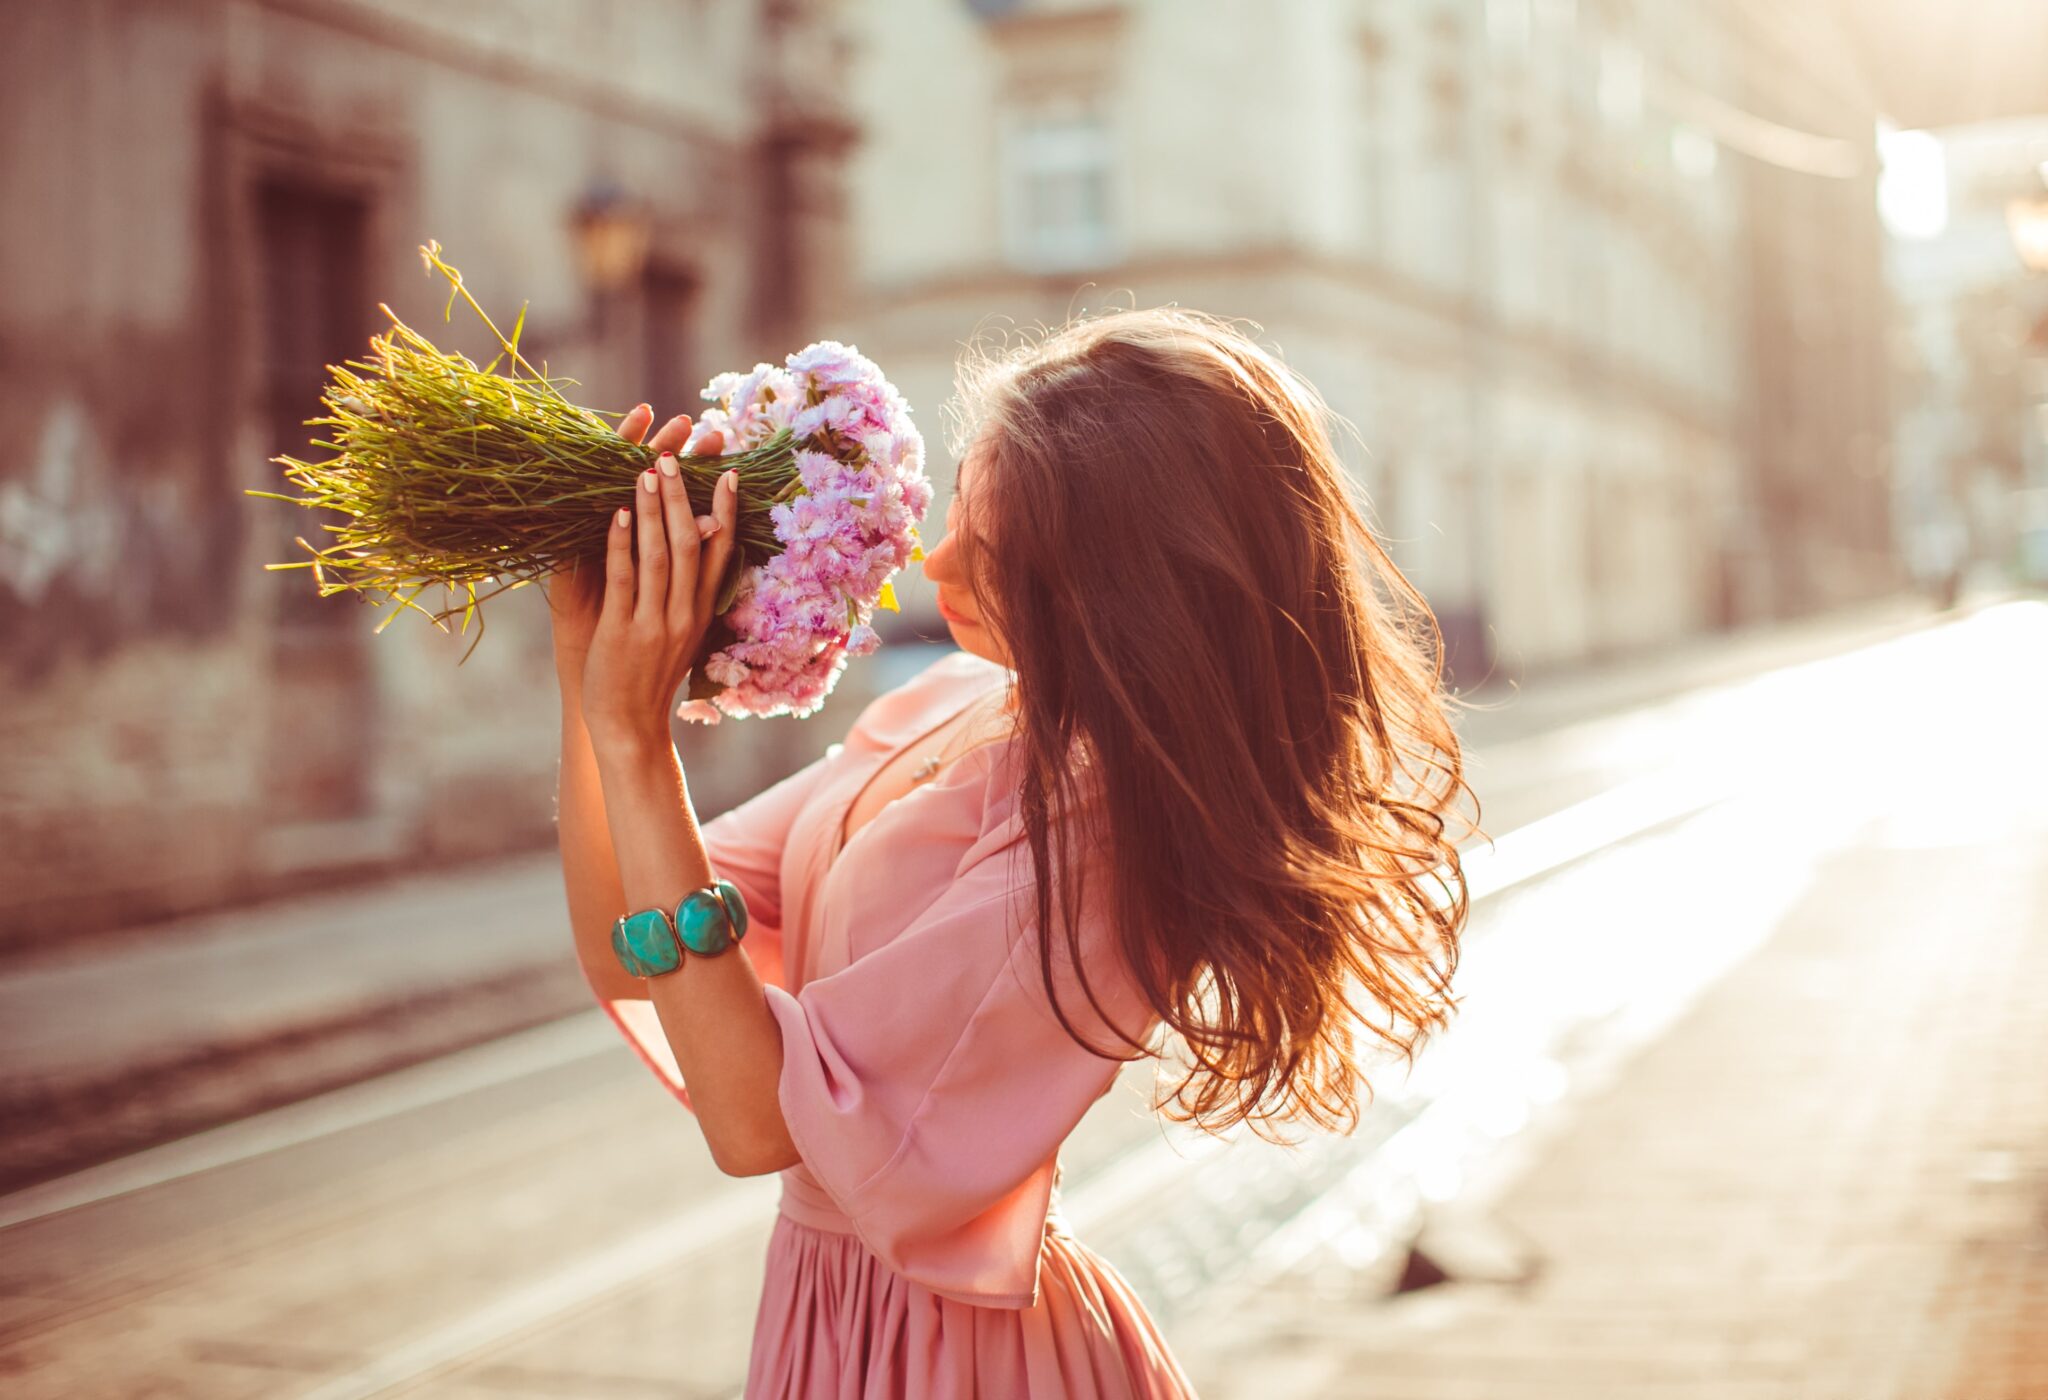 Фото оголенной девушки на фоне комнатного цветка